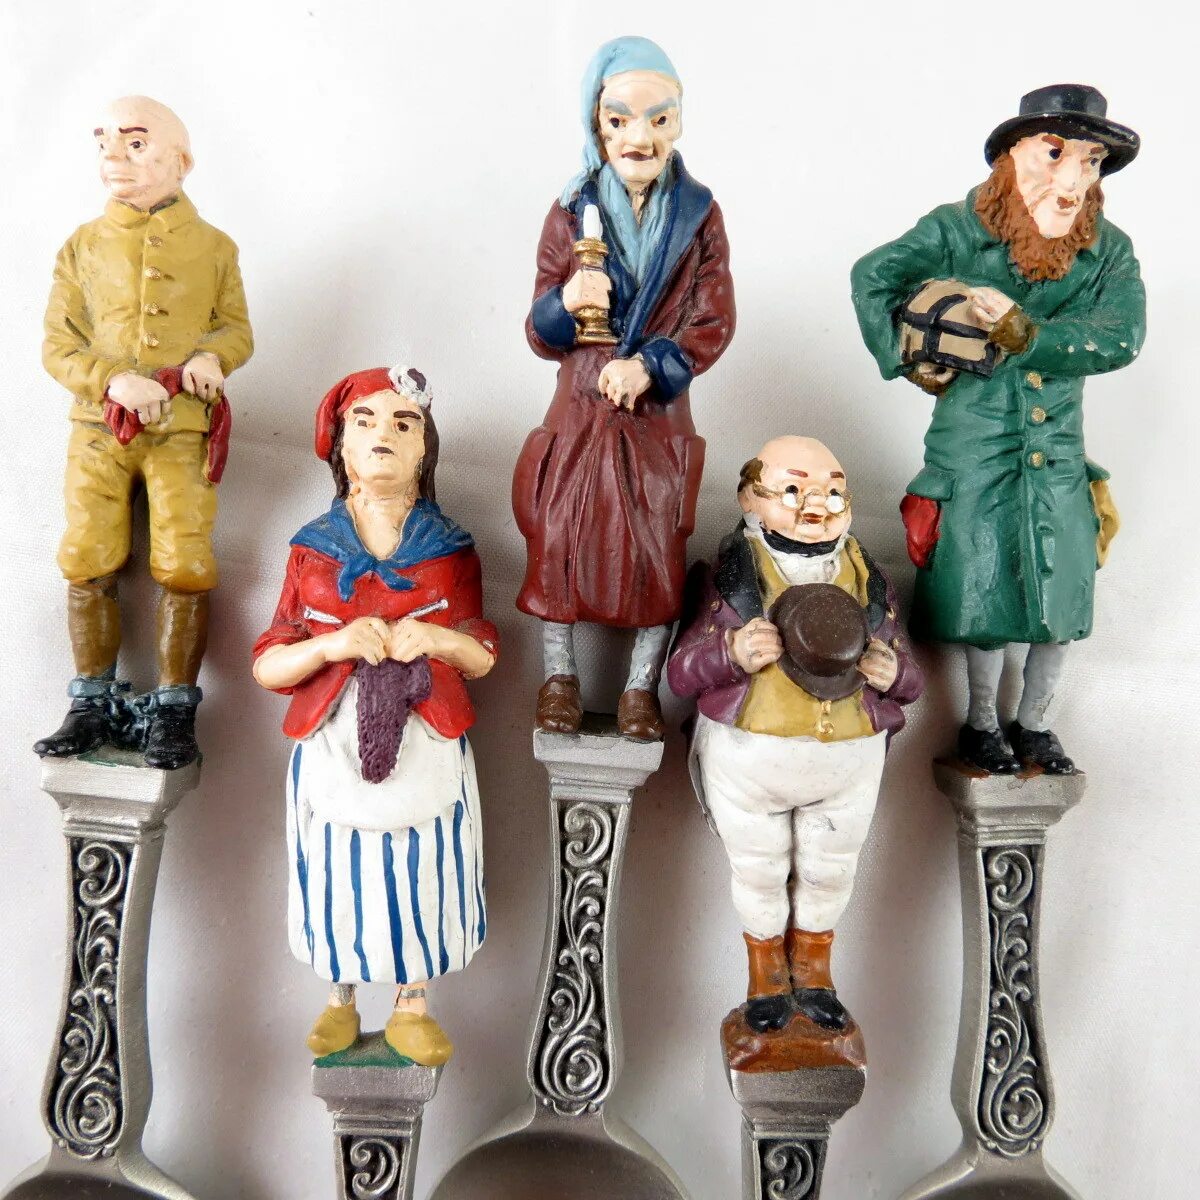 Сувенирная коллекция. Статуэтки персонажей Чарльза Диккенса. Коллекционные сувениры. Коллекция моделей из олова Франклин минт.